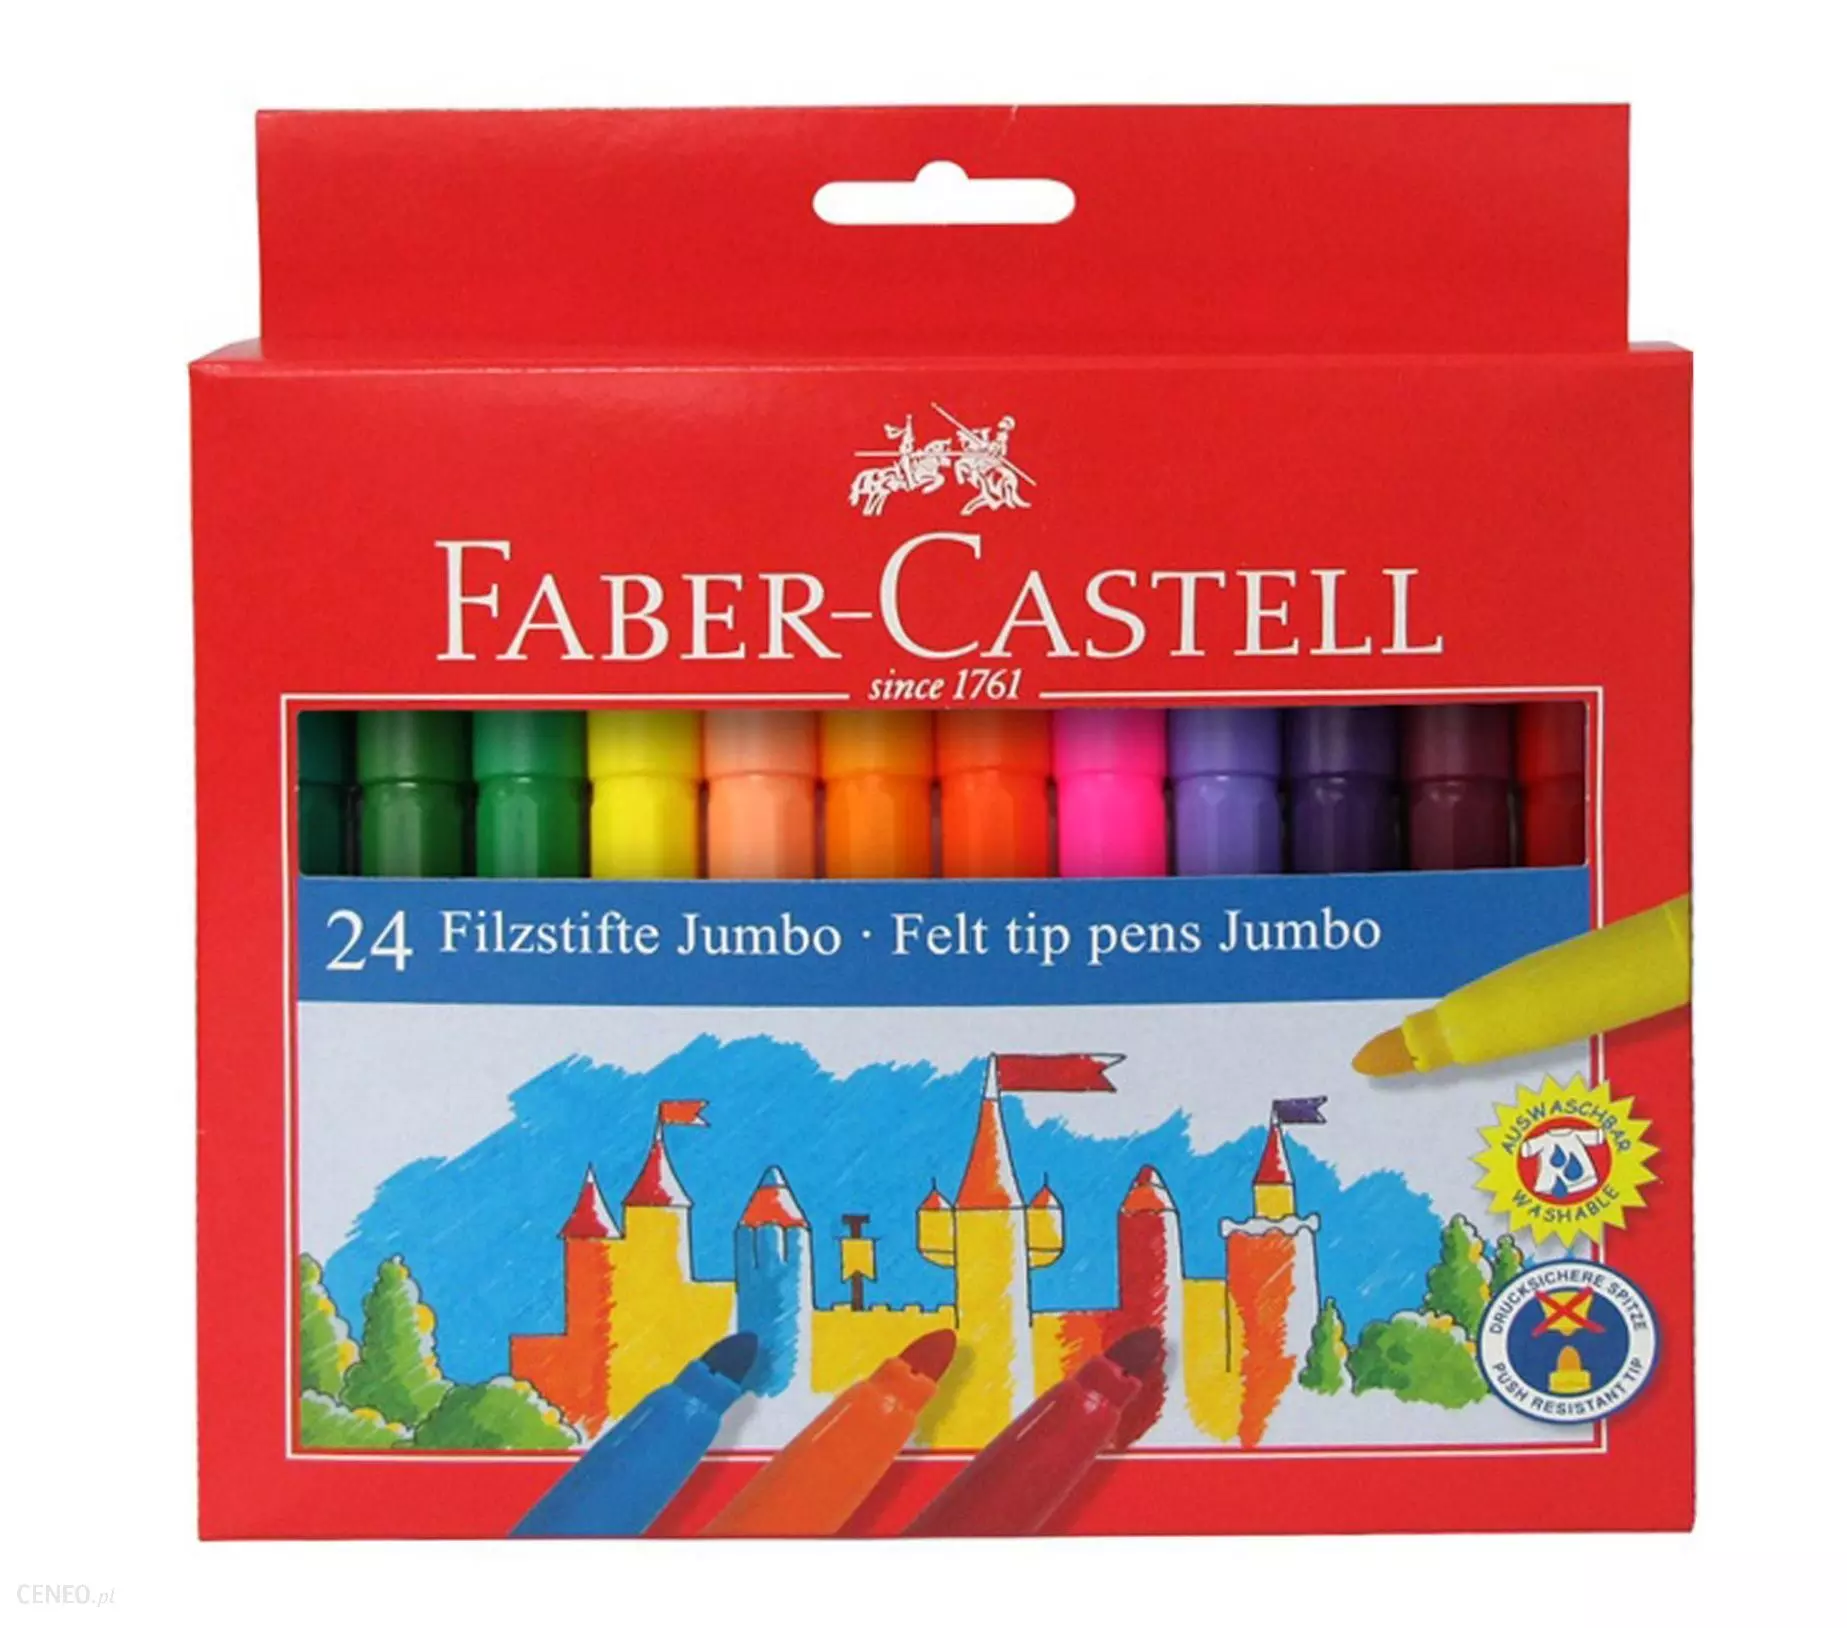 Faber-Castell Felt Tip Pen Jumbo, Cardboard